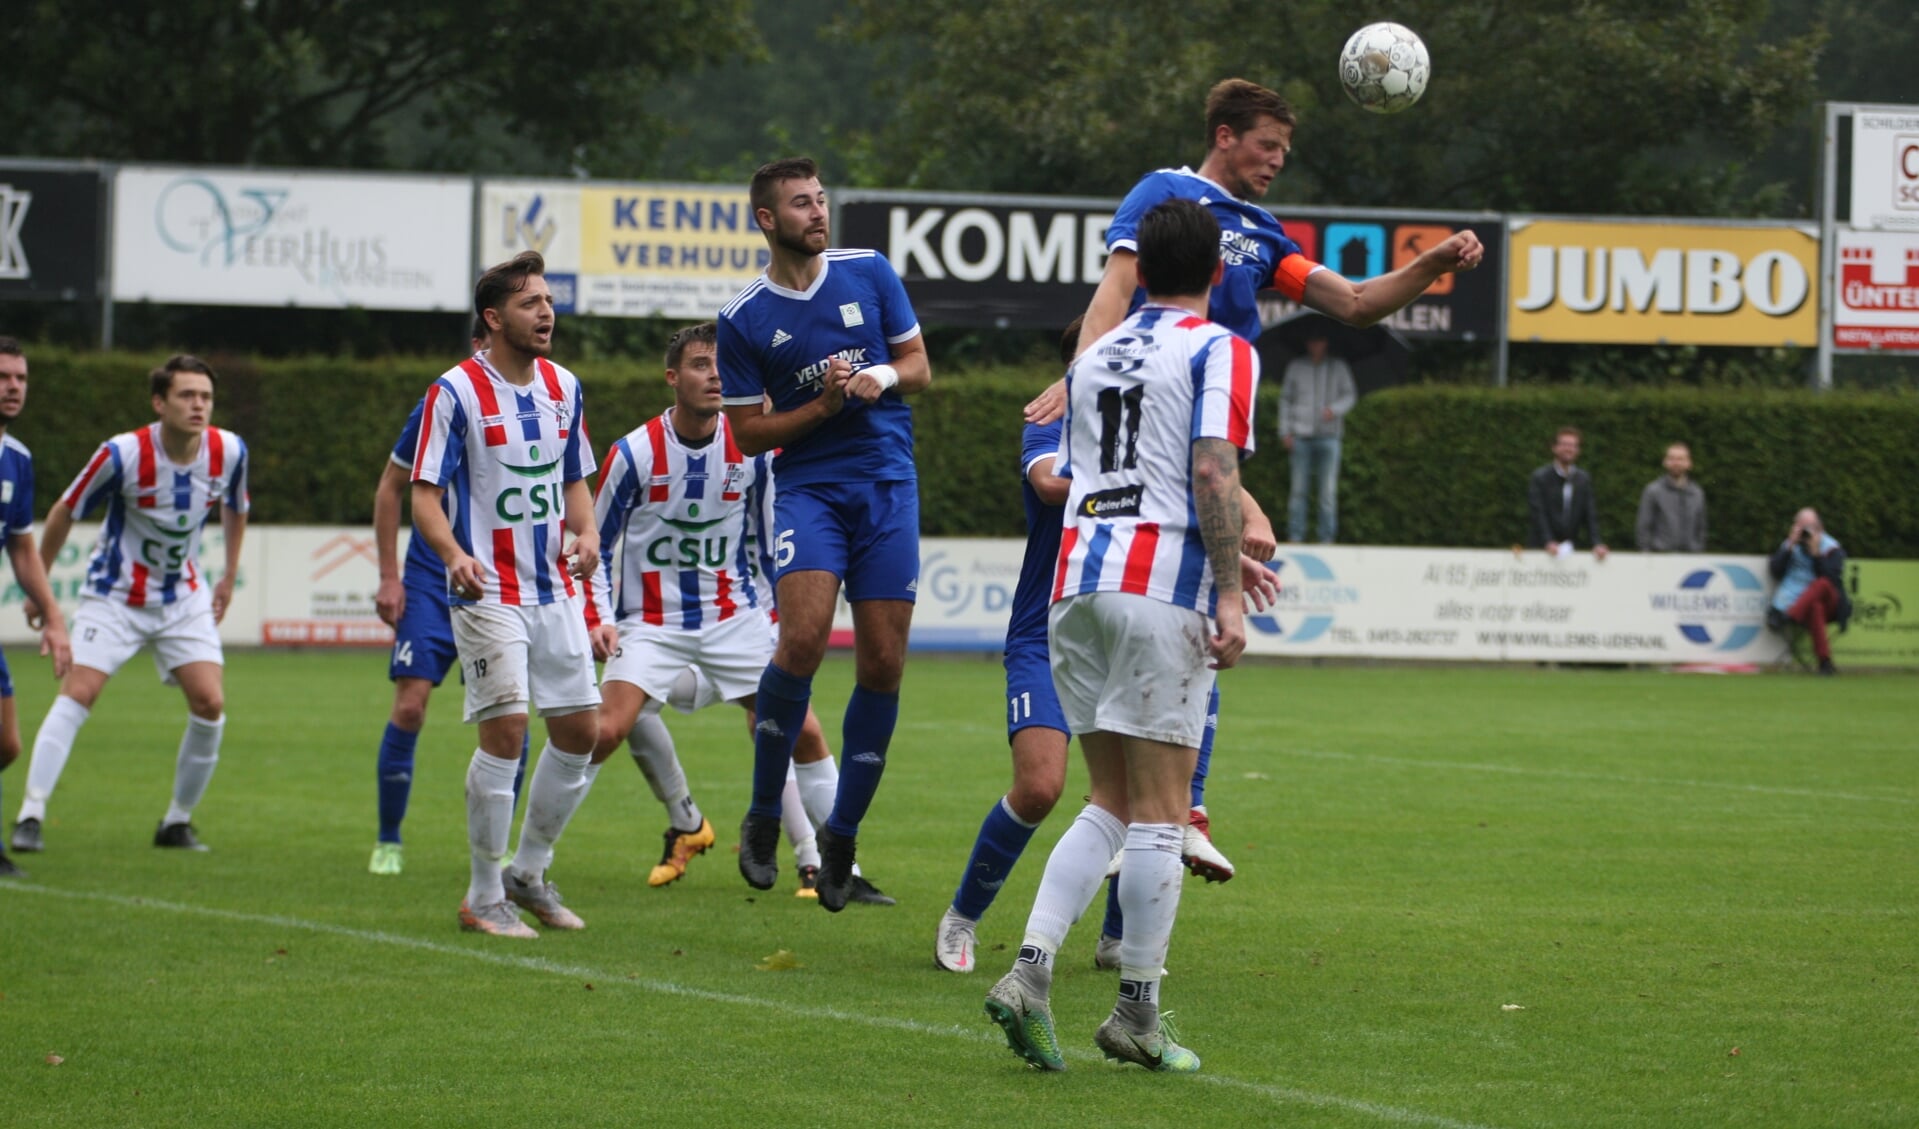 UDI'19 opende zondag het nieuwe seizoen met een overwinning op Nuenen.